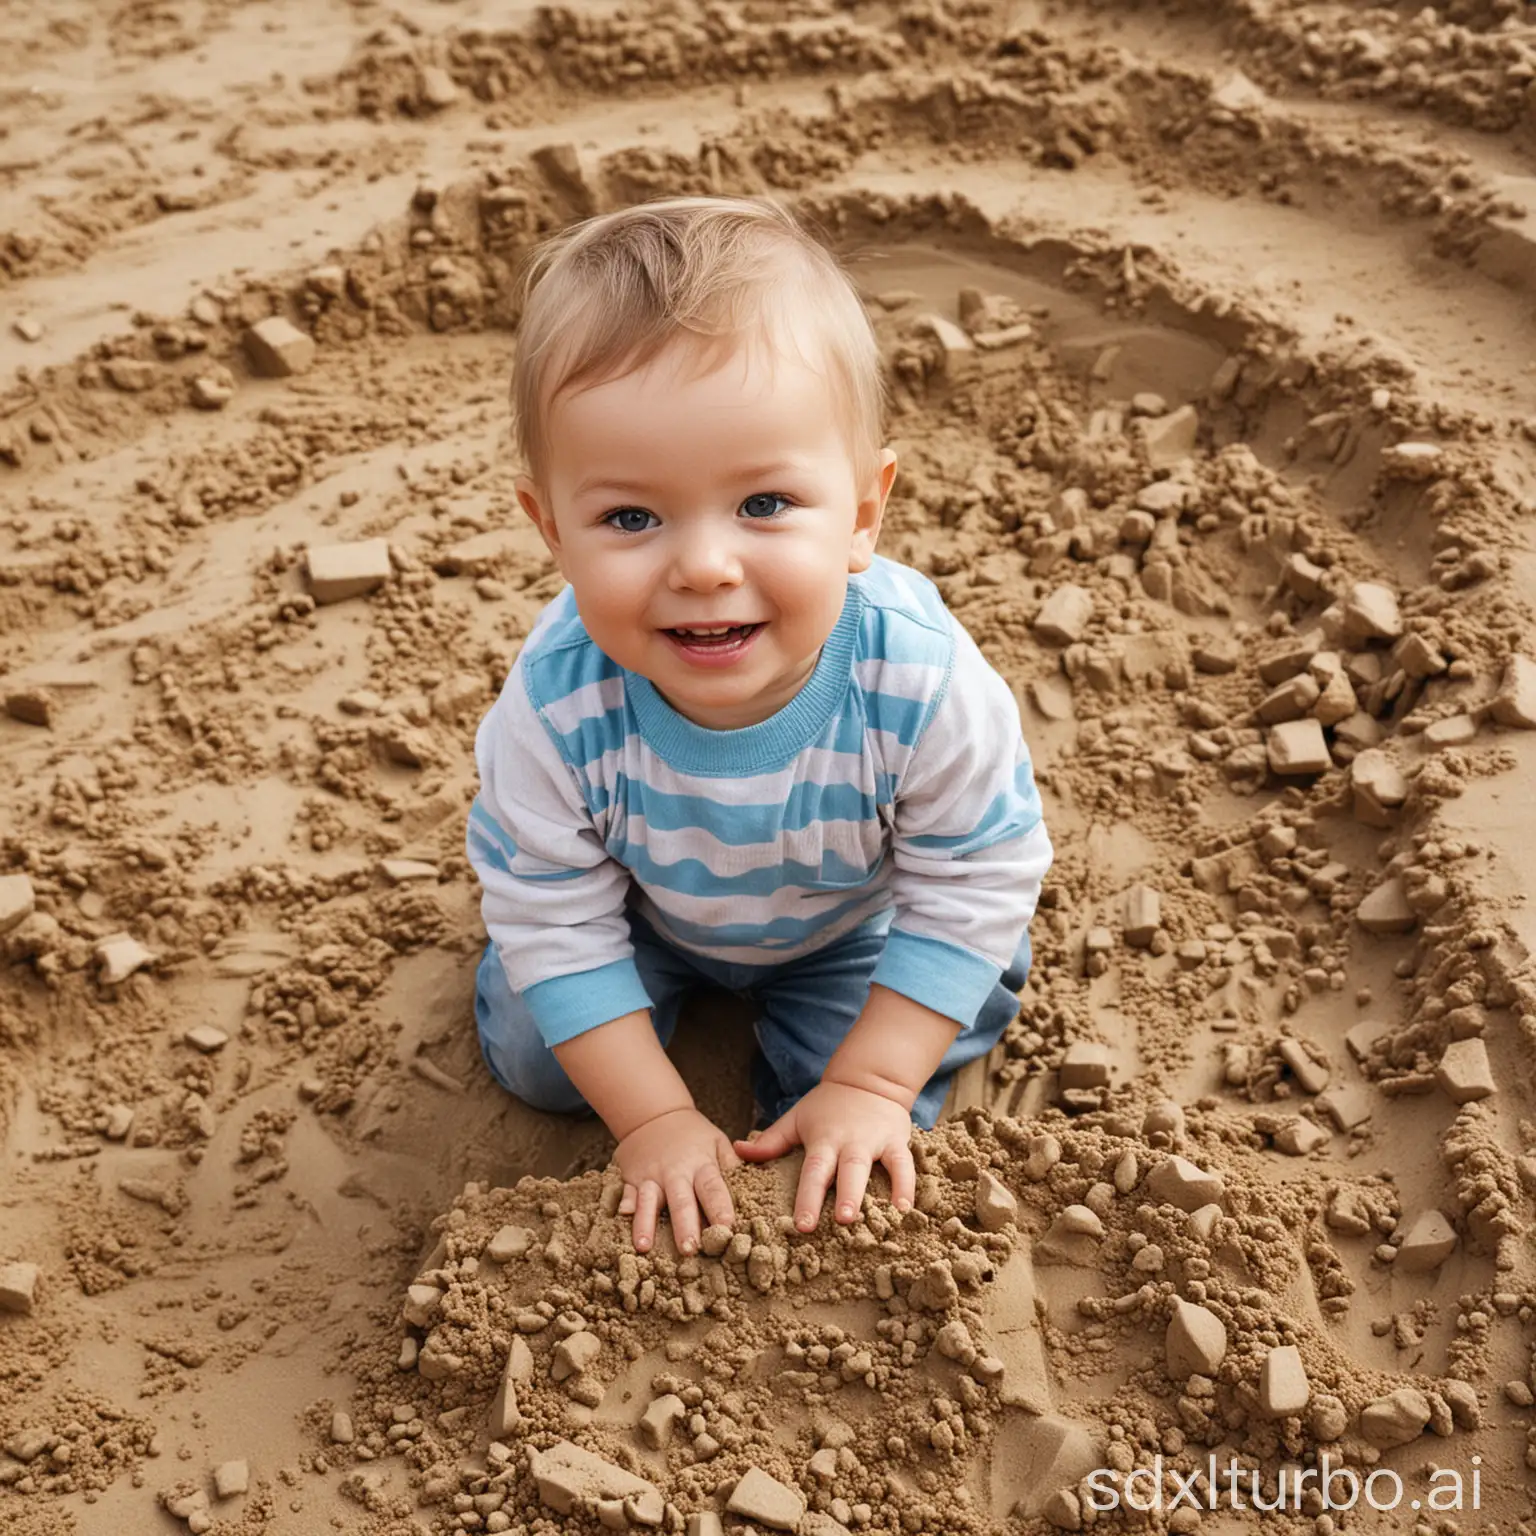 Playful-Child-Enjoying-Sandbox-Fun